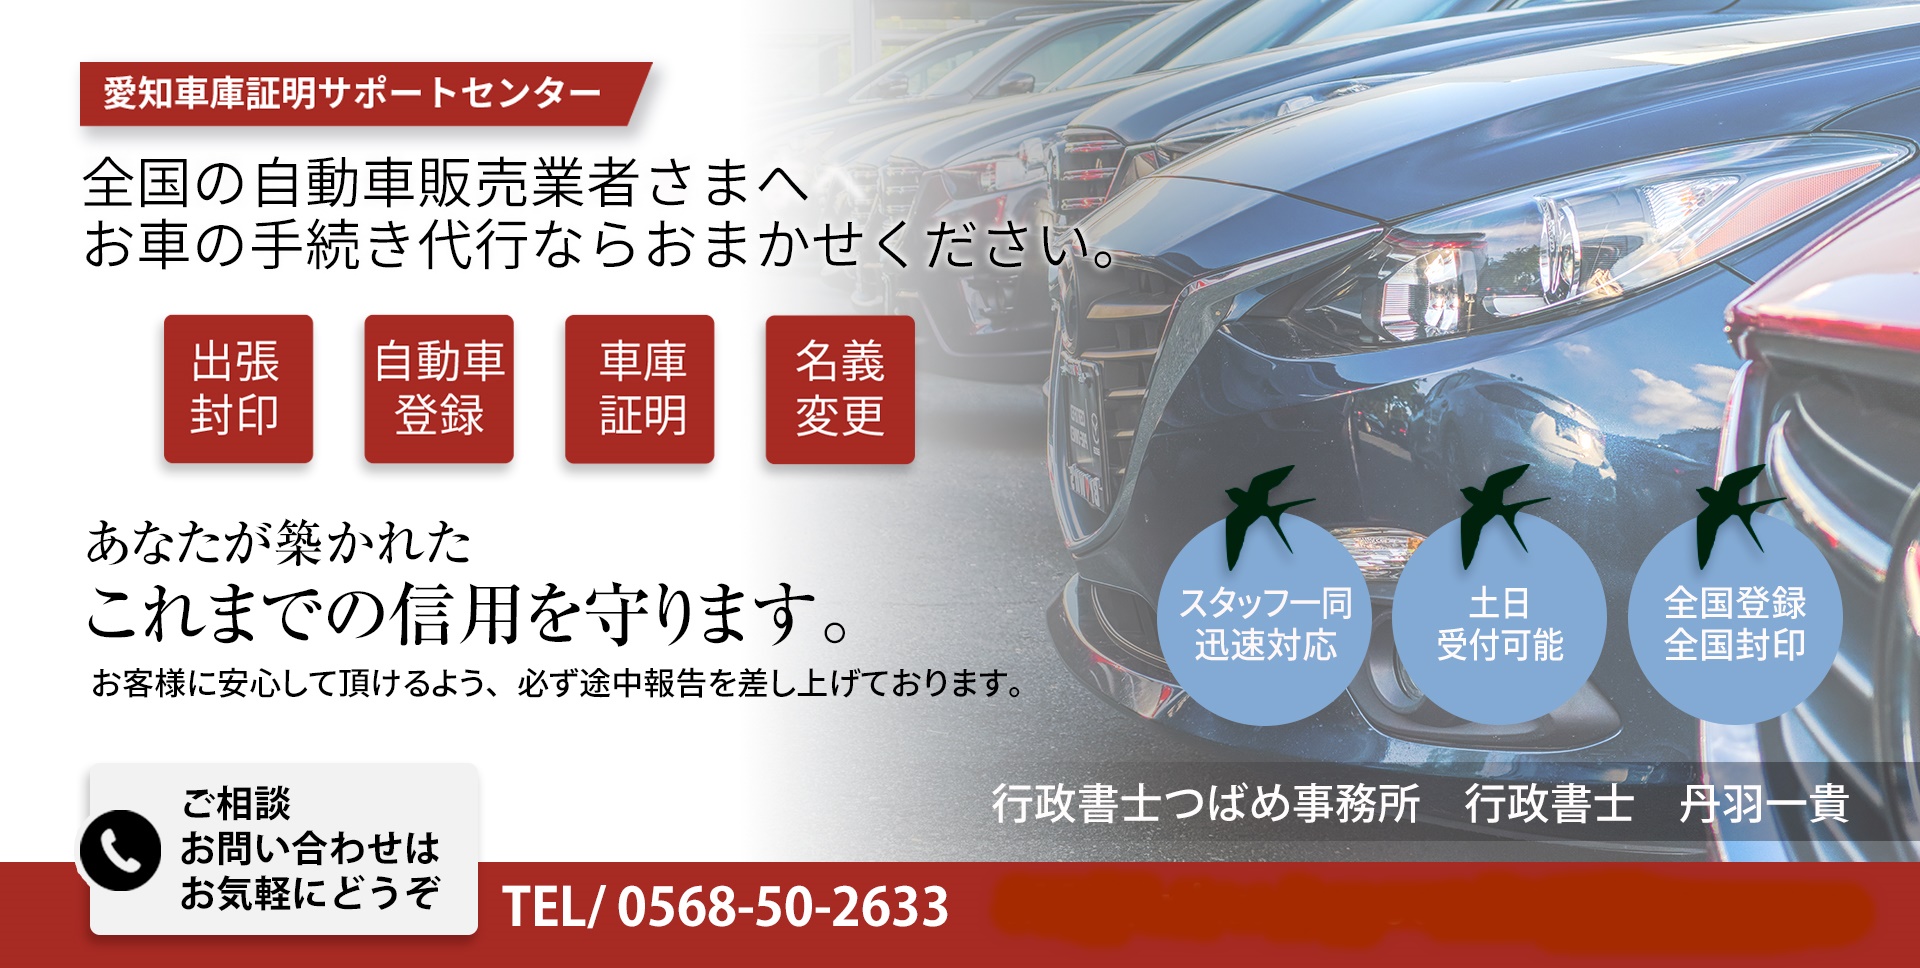 名古屋市名東区の車庫証明 | 行政書士つばめ事務所が名東警察署の車庫証明を代行します